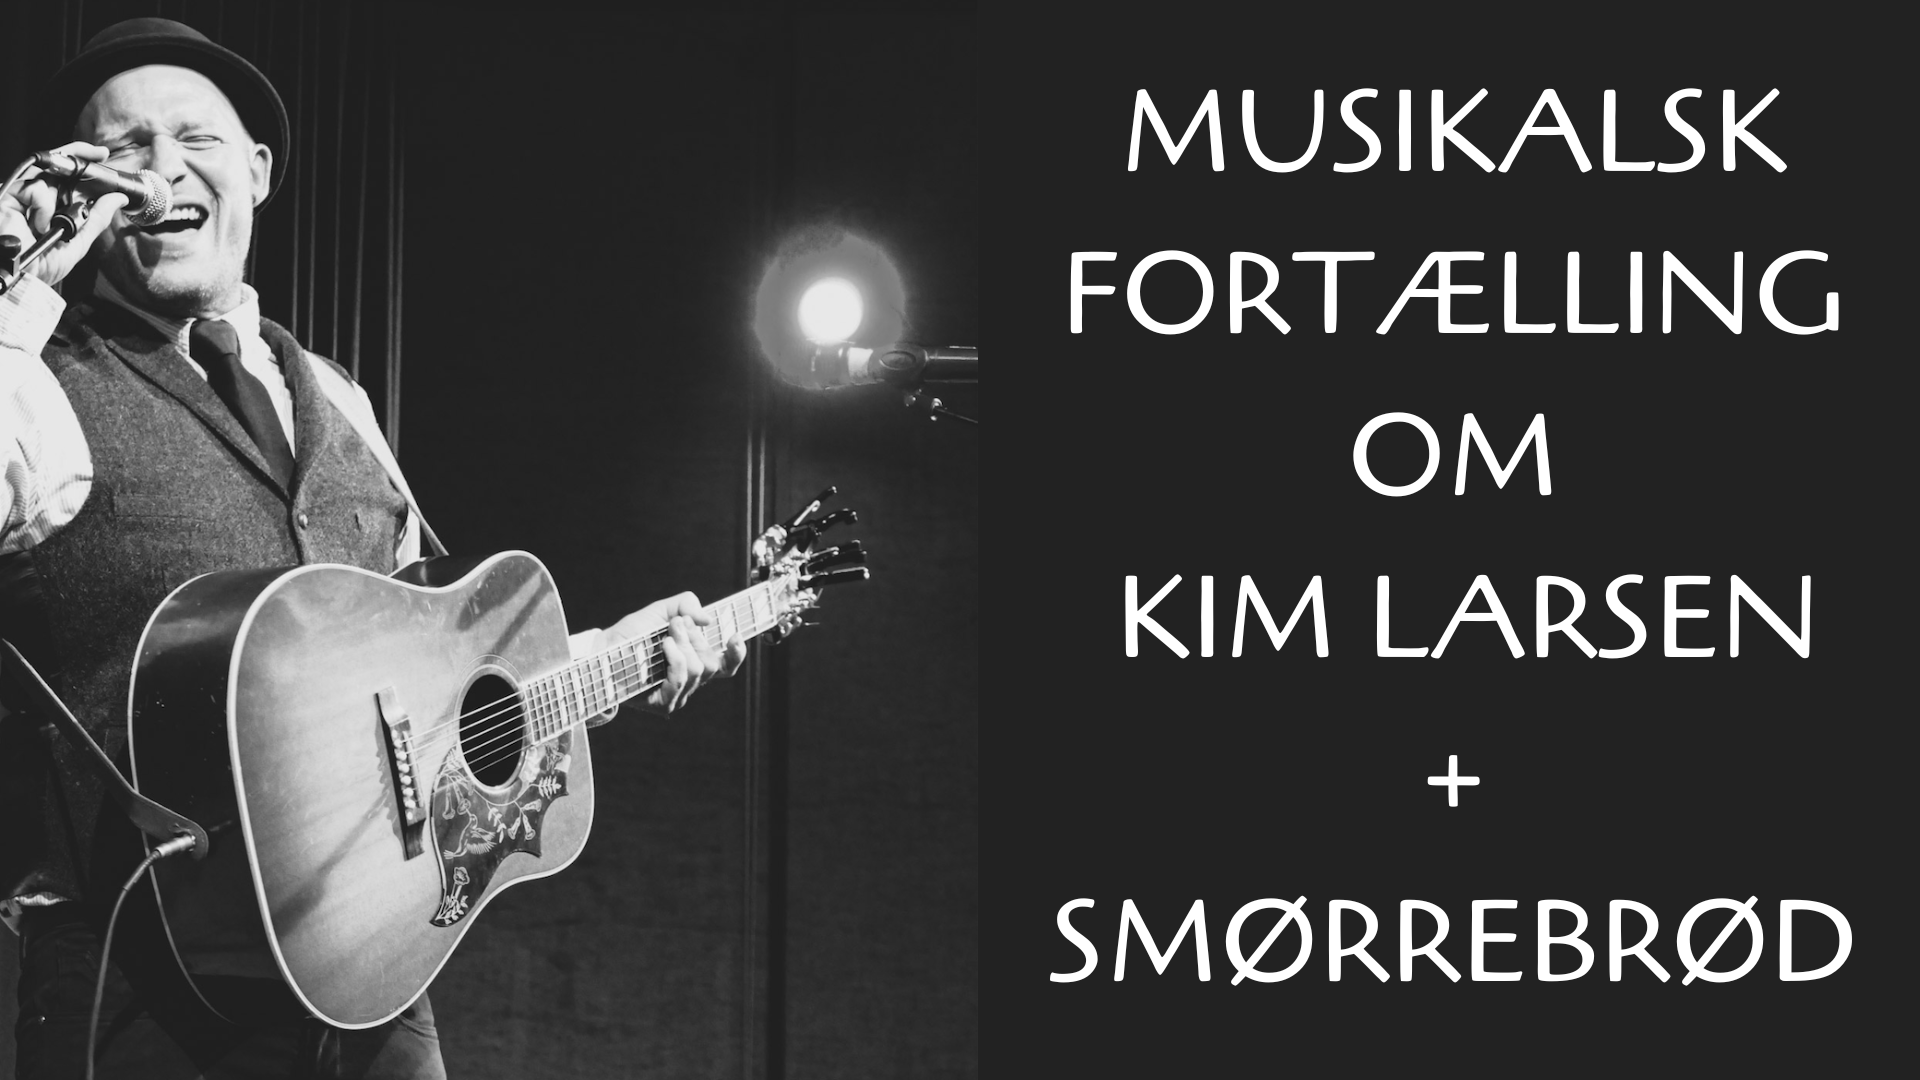 Musikalsk fortælling om Kim Larsen inkl. smørrebrødsbuffet